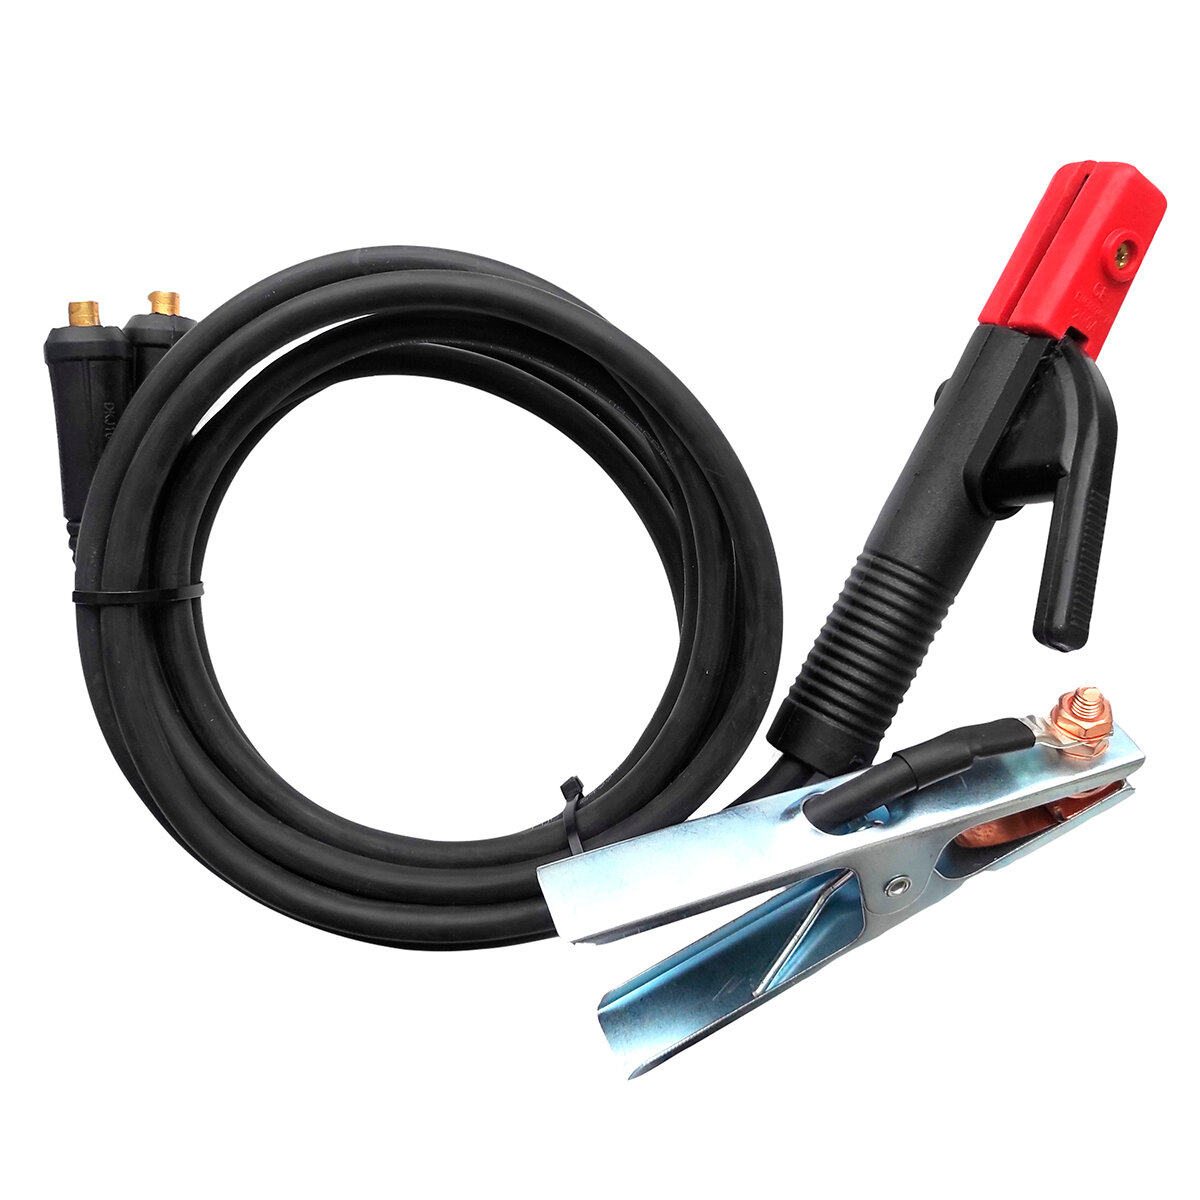 Комплект кабелей d16 mm 4м Профессионал 015 комплект сварочных кабелей vebex 10 метров держатели 300а вилки 10 25 скваркаб10м